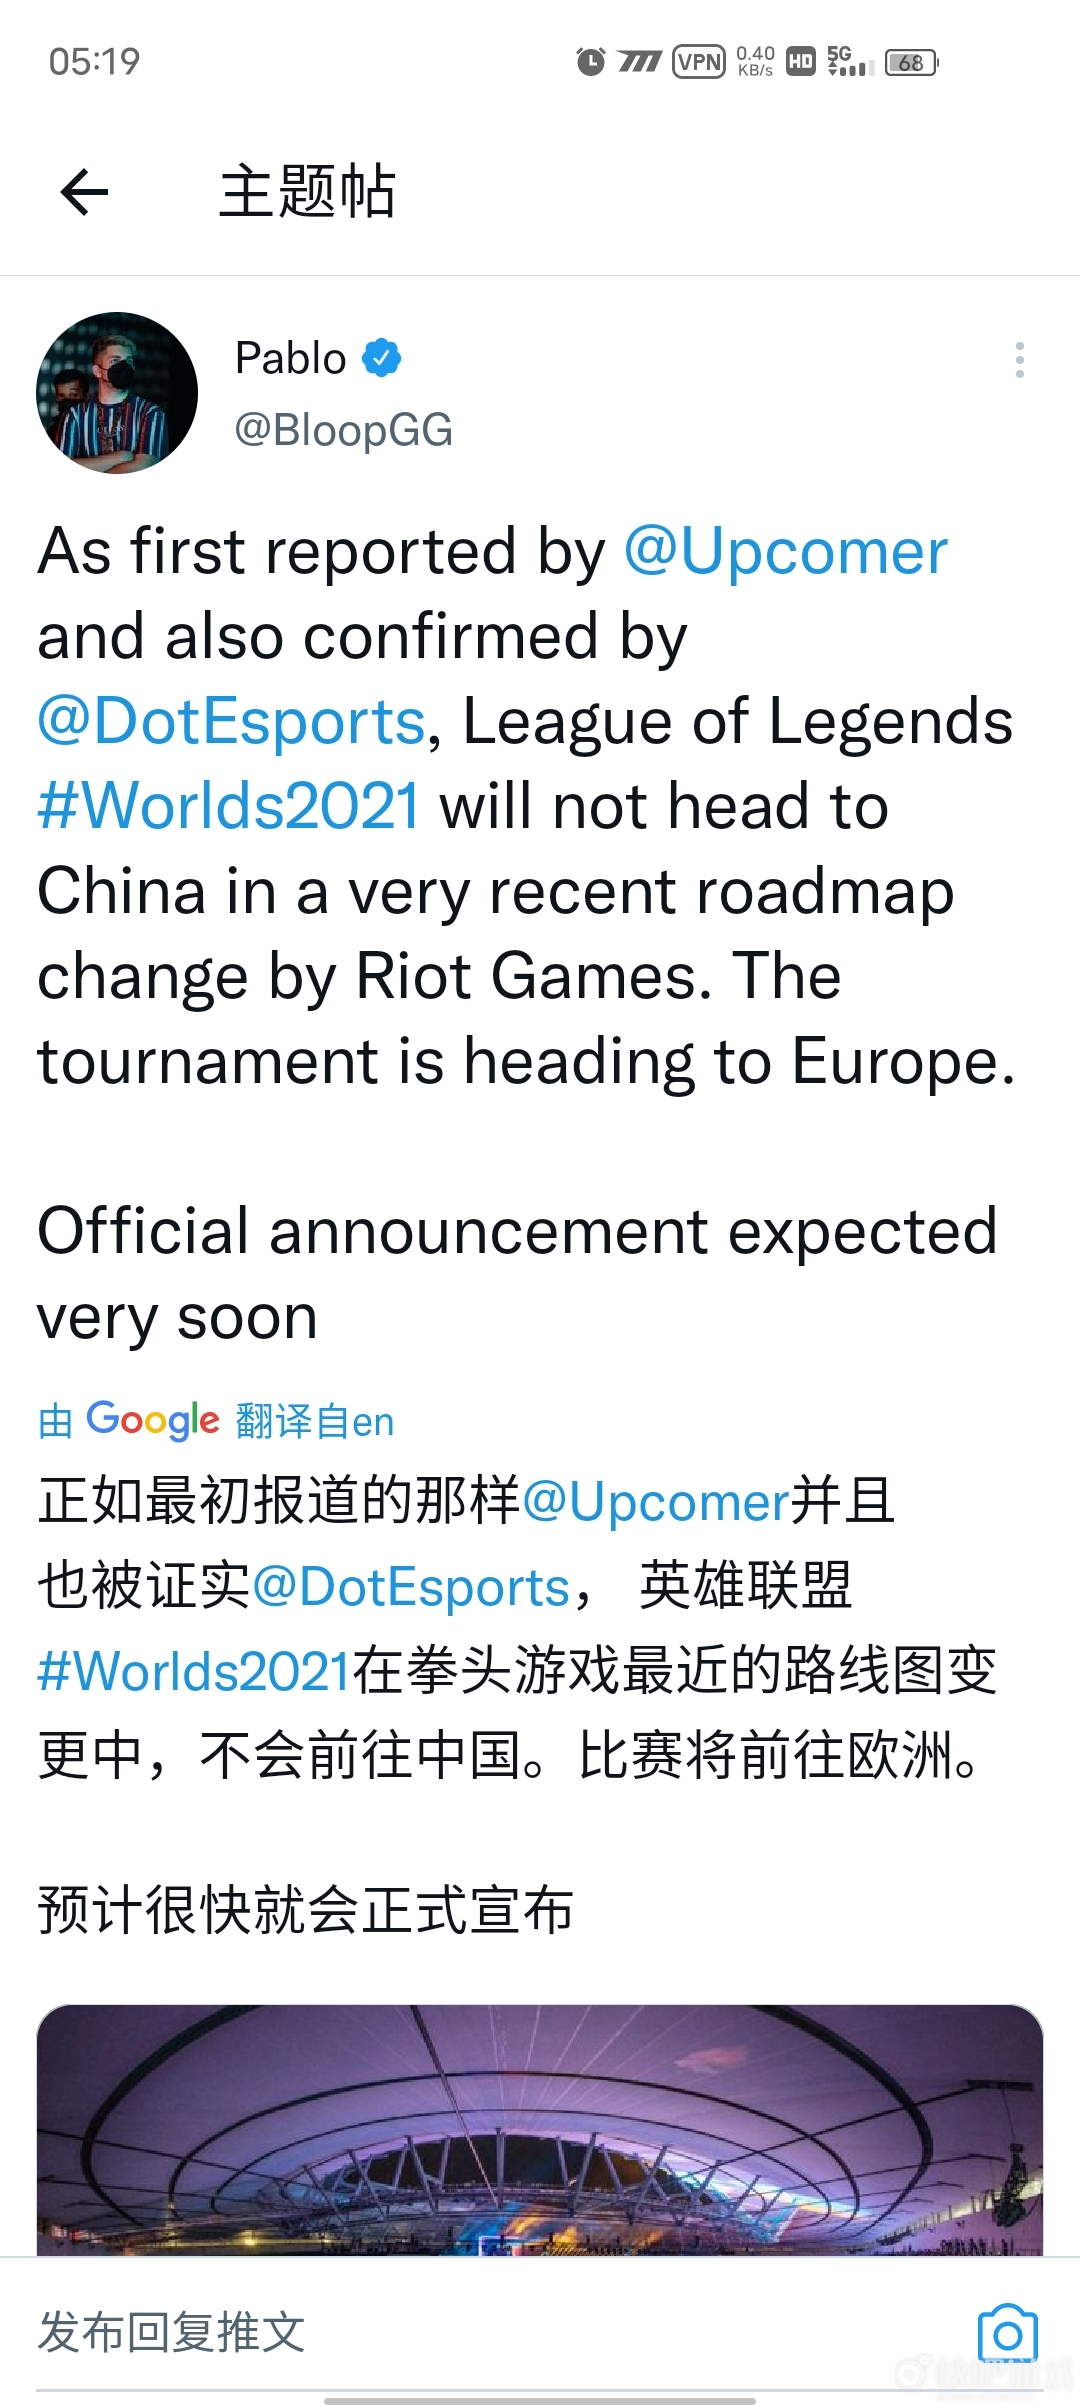 2021LOL全球总决赛举办地址更改  将中国改到欧洲